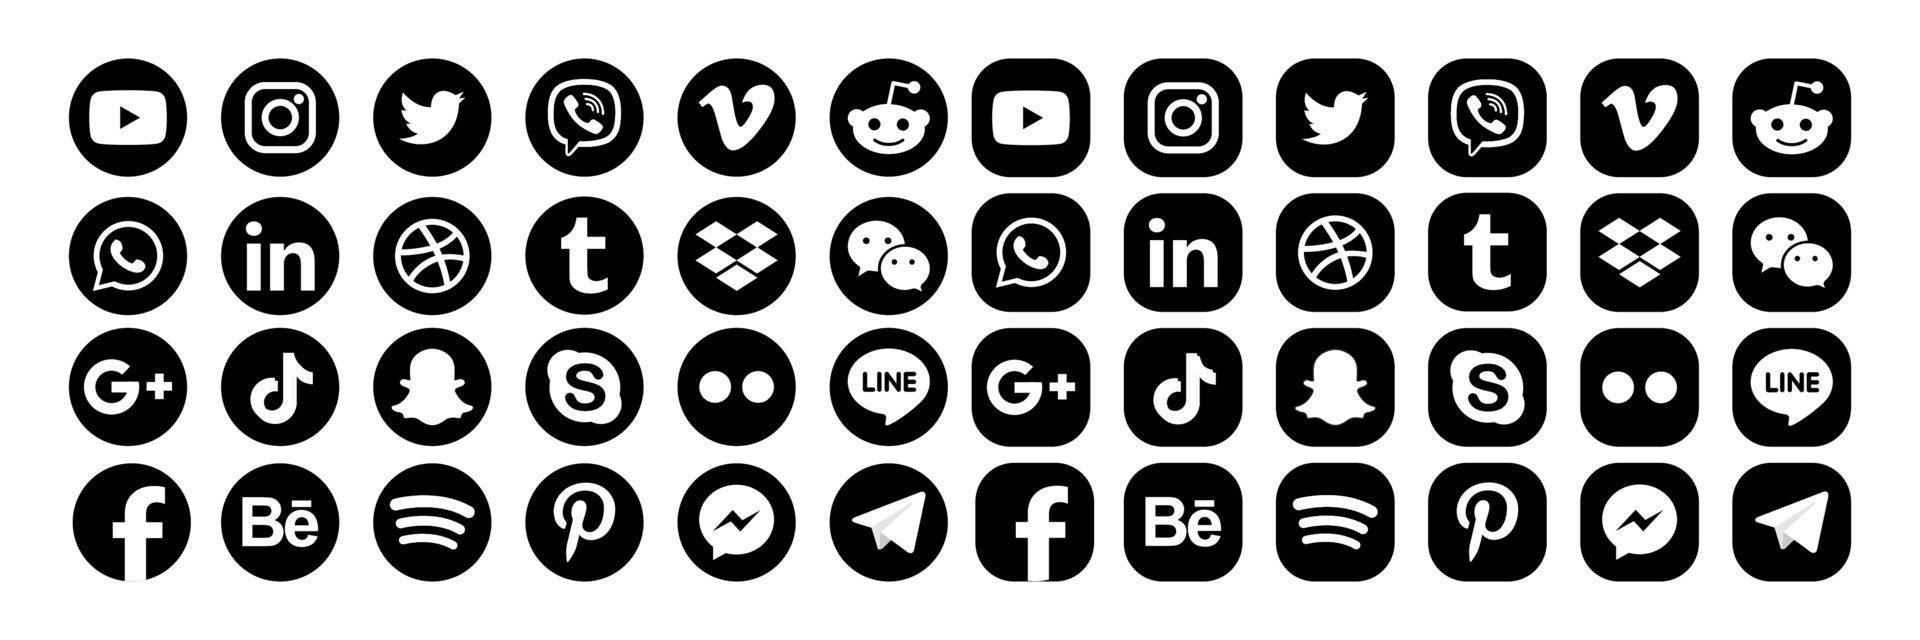 ställ in populära ikoner för sociala medier. facebook, instagram, twitter, youtube, pinterest, behance, google plus, linkedin, whatsapp, snapchat, tiktok, tumblr, spotify, dropbox och många fler vektor